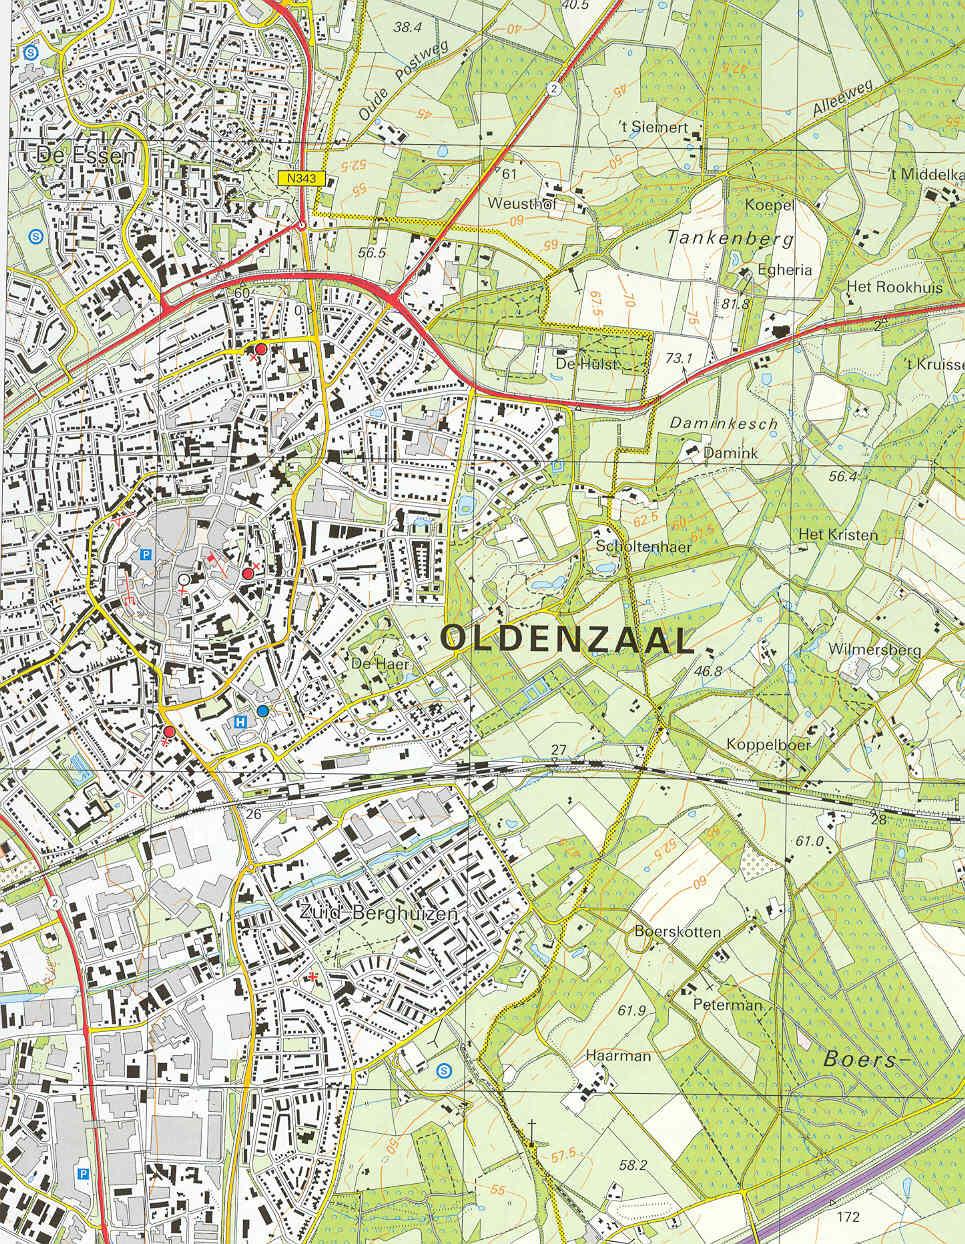 1 Inleiding 1.1 Aanleiding Binnen de gemeente Oldenzaal is sprake van enkele locaties waar grootschalige transformatie van bestaand bebouwd gebied aan de orde is.